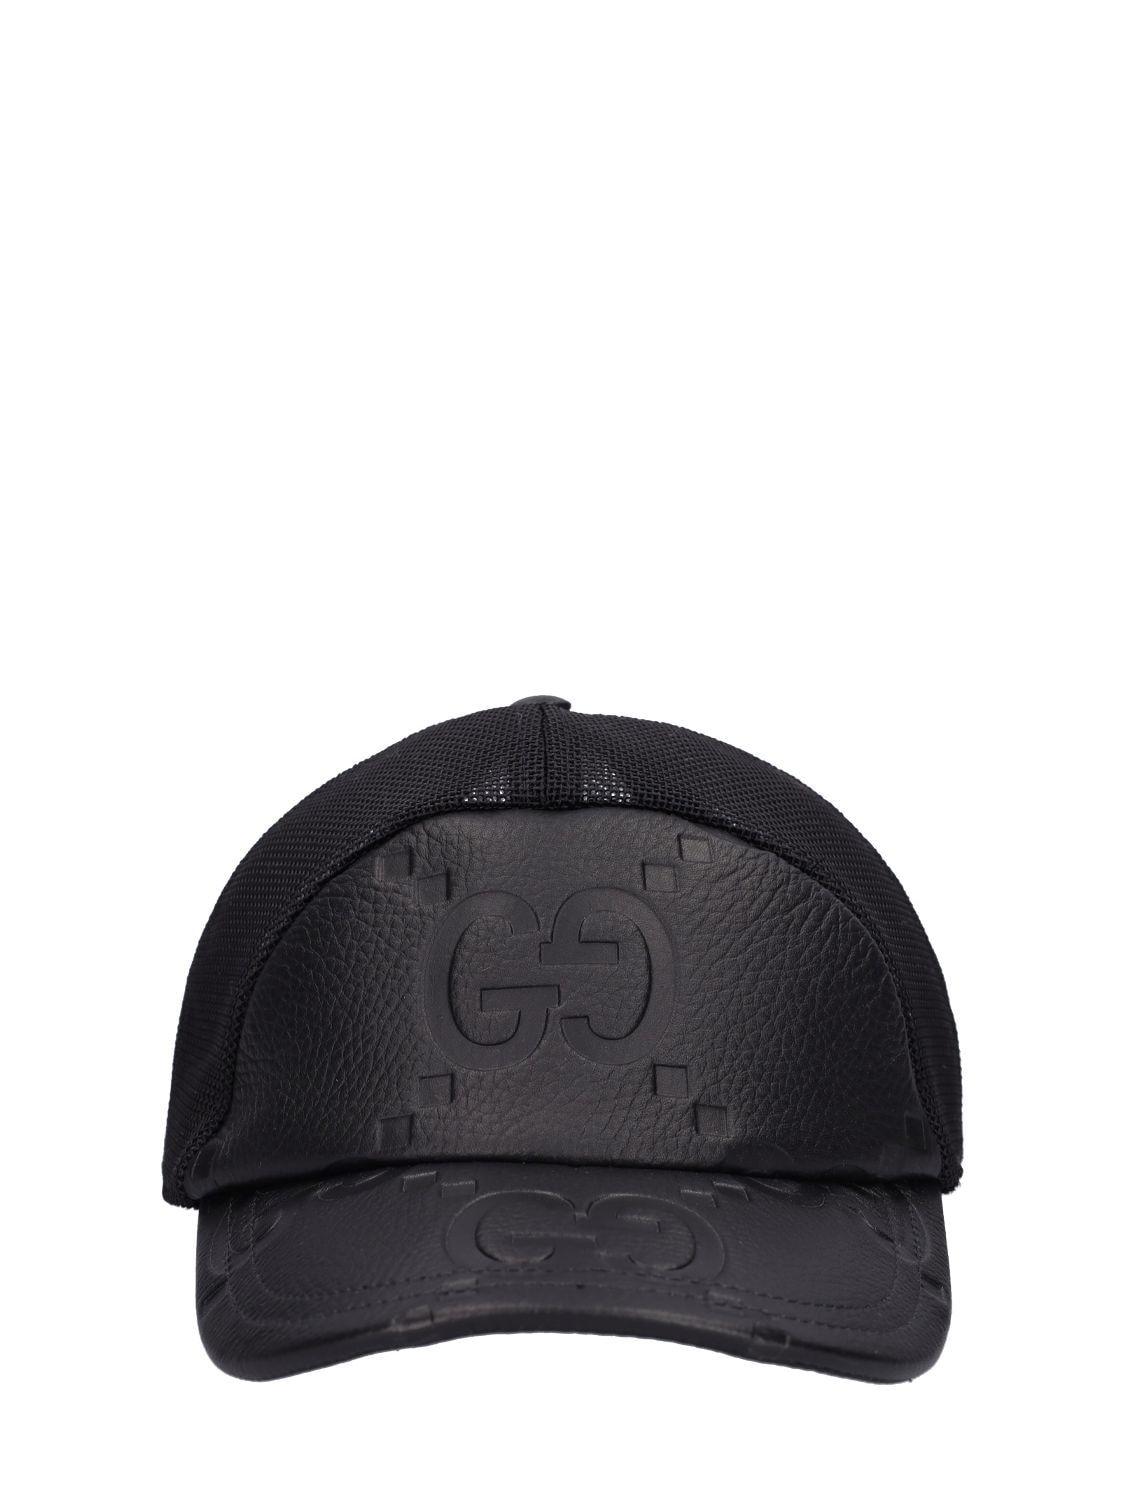 Gucci Jumbo gg Leather & Mesh Baseball Cap in Black for Men